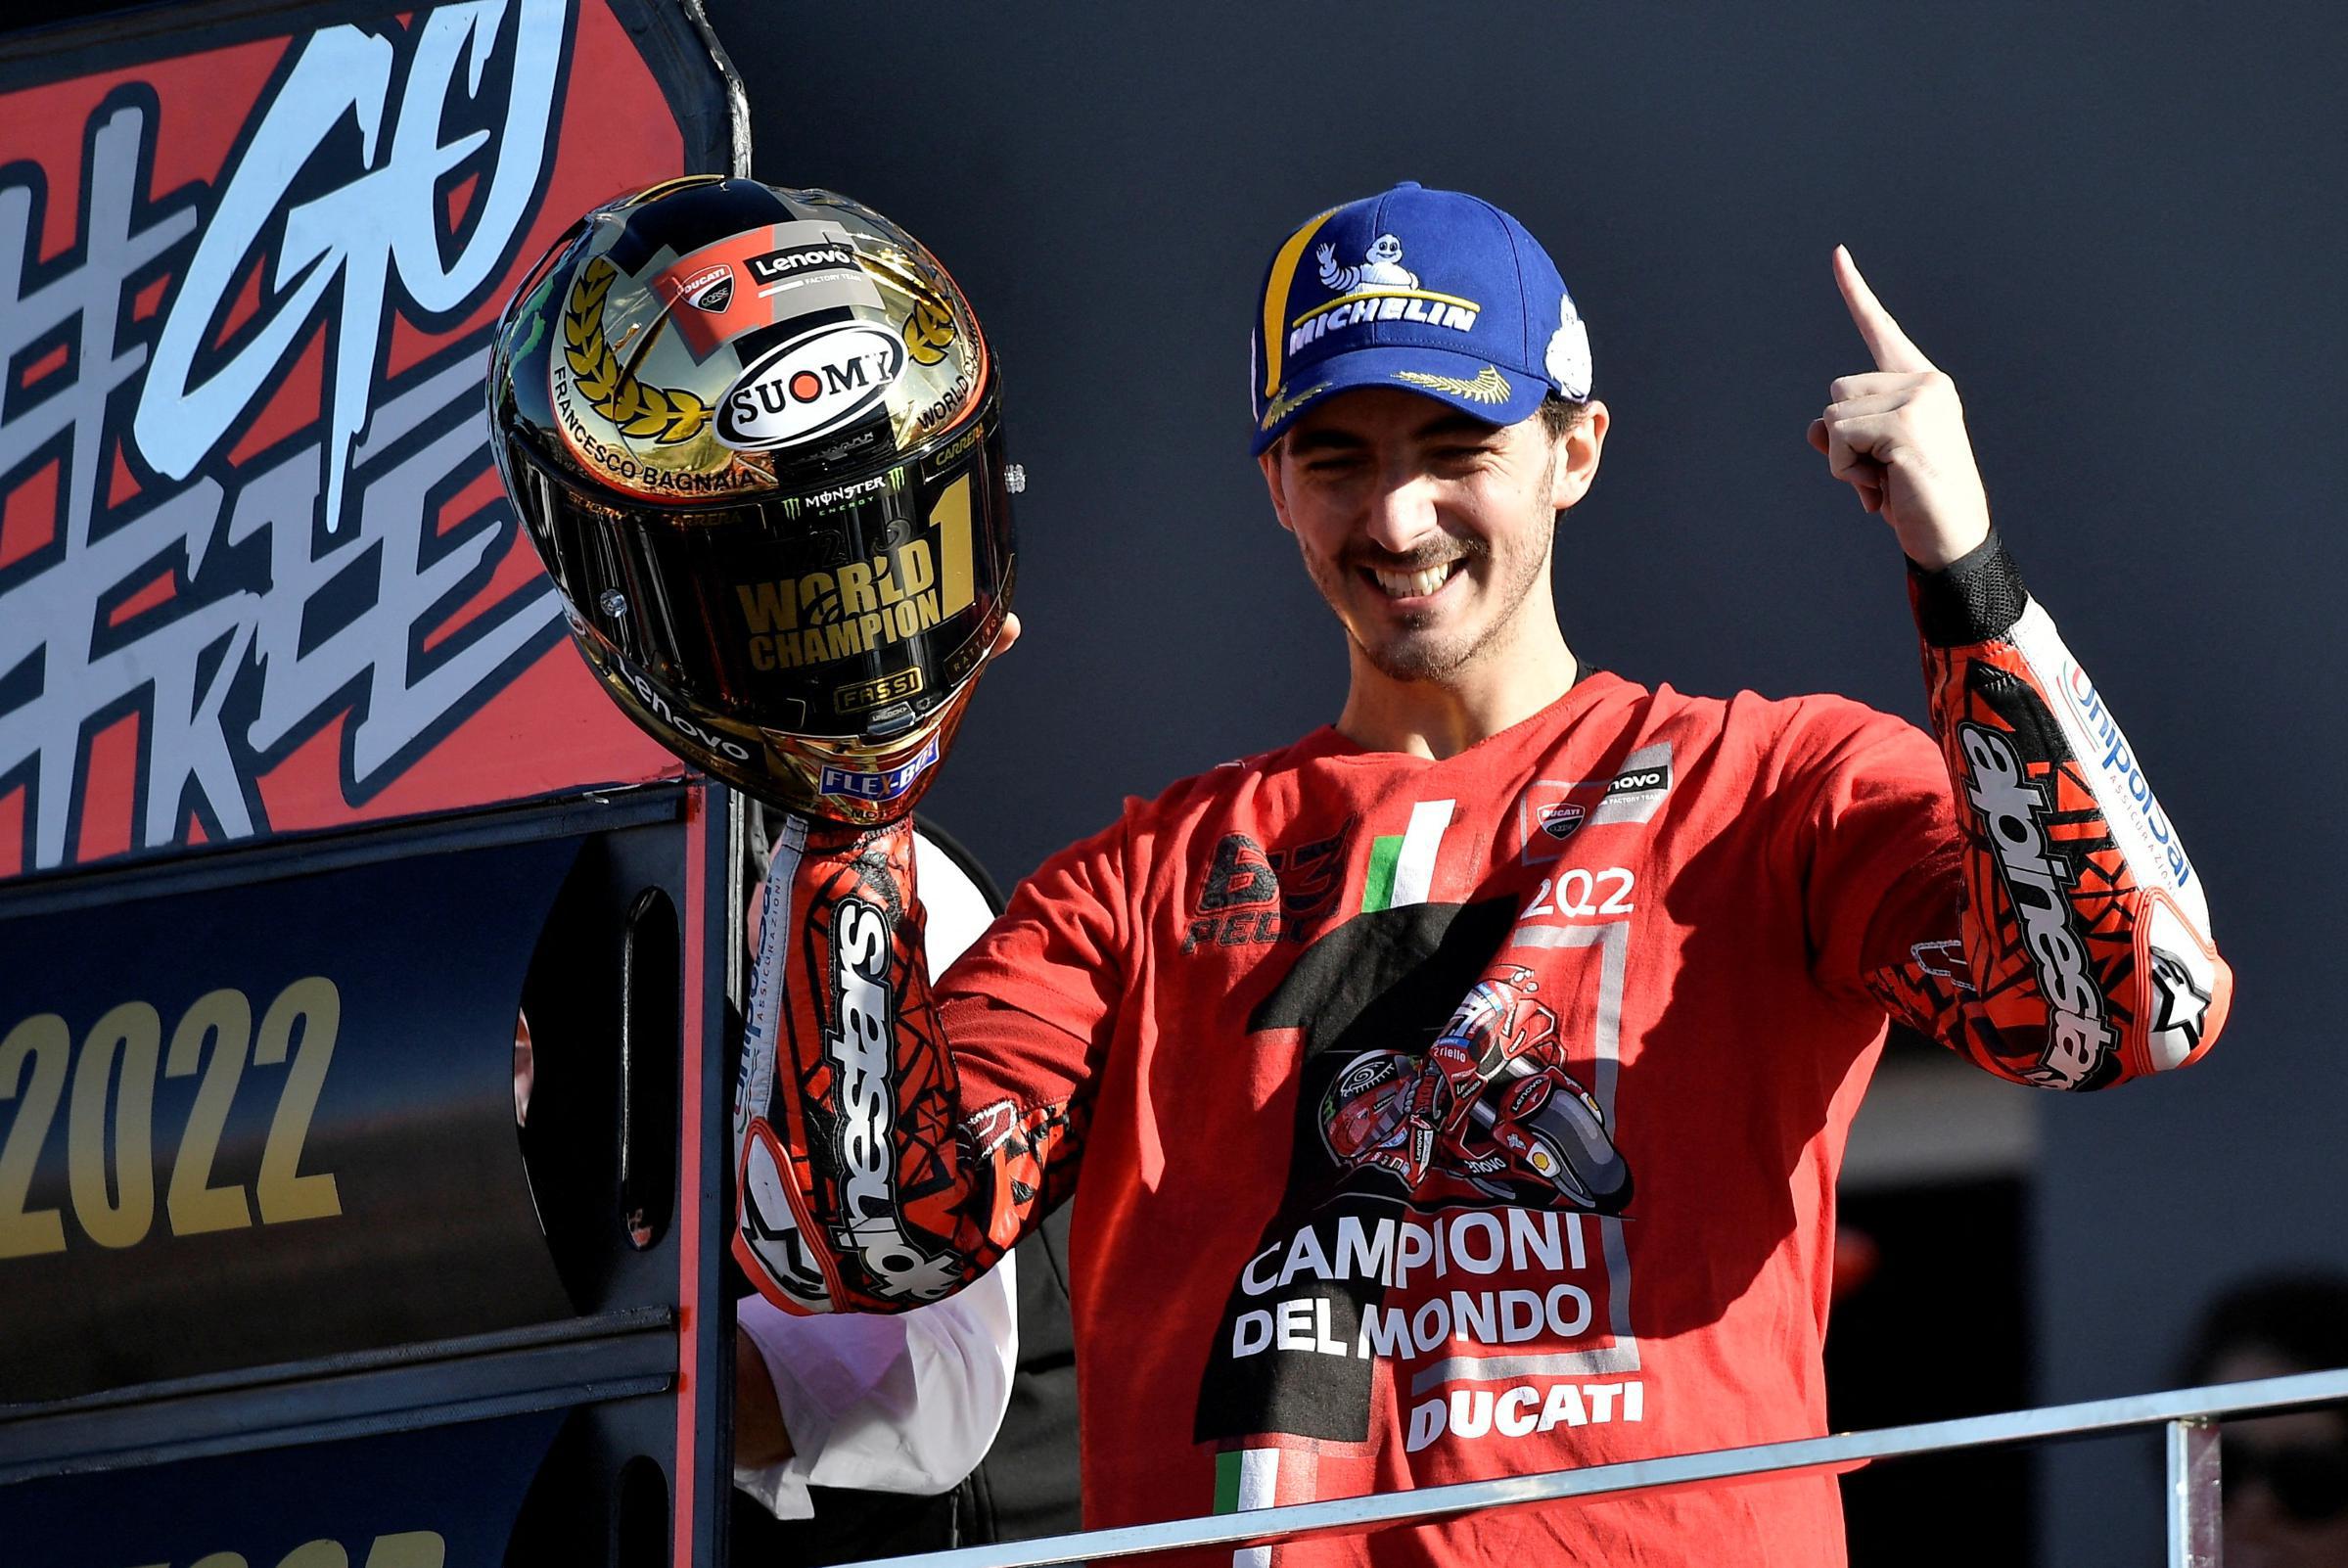 L’Italia ha un successore di Valentino Rossi: Francesco Bagnaia incorona il campione del mondo MotoGP 13 anni dopo Rossi